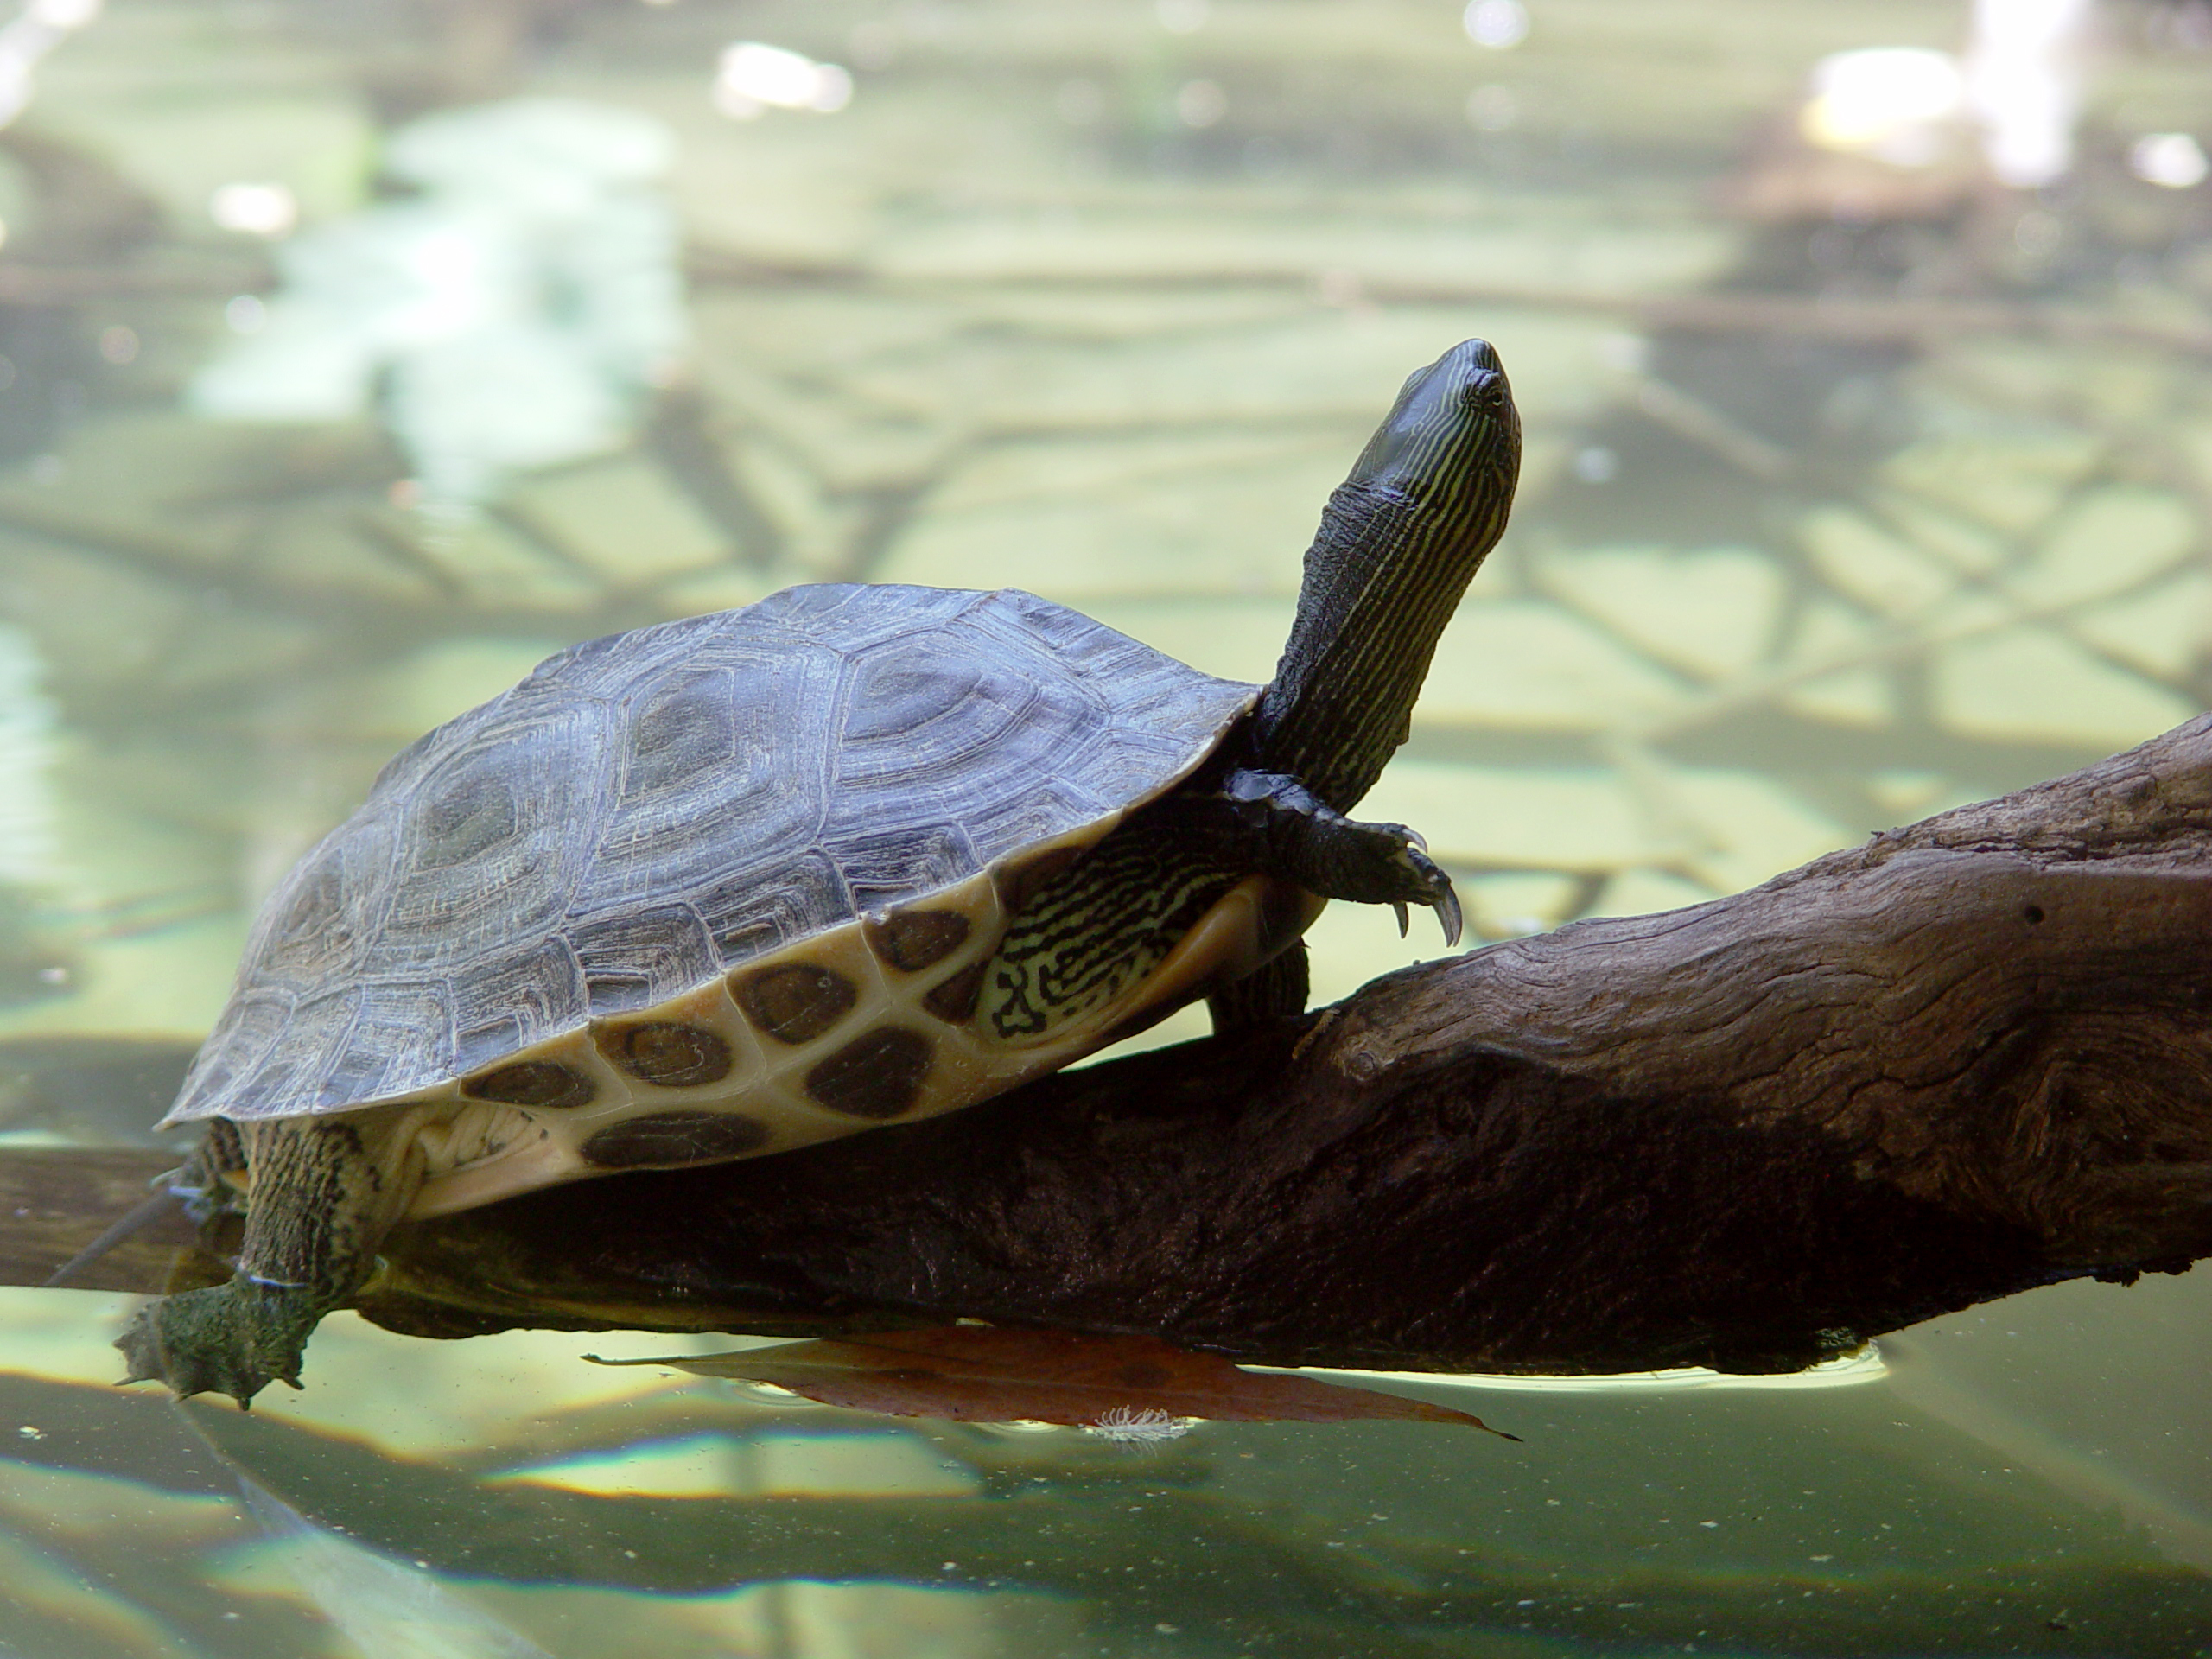 Védett teknősbékákat találtak egy utas csomagjában a prágai repülőtéren